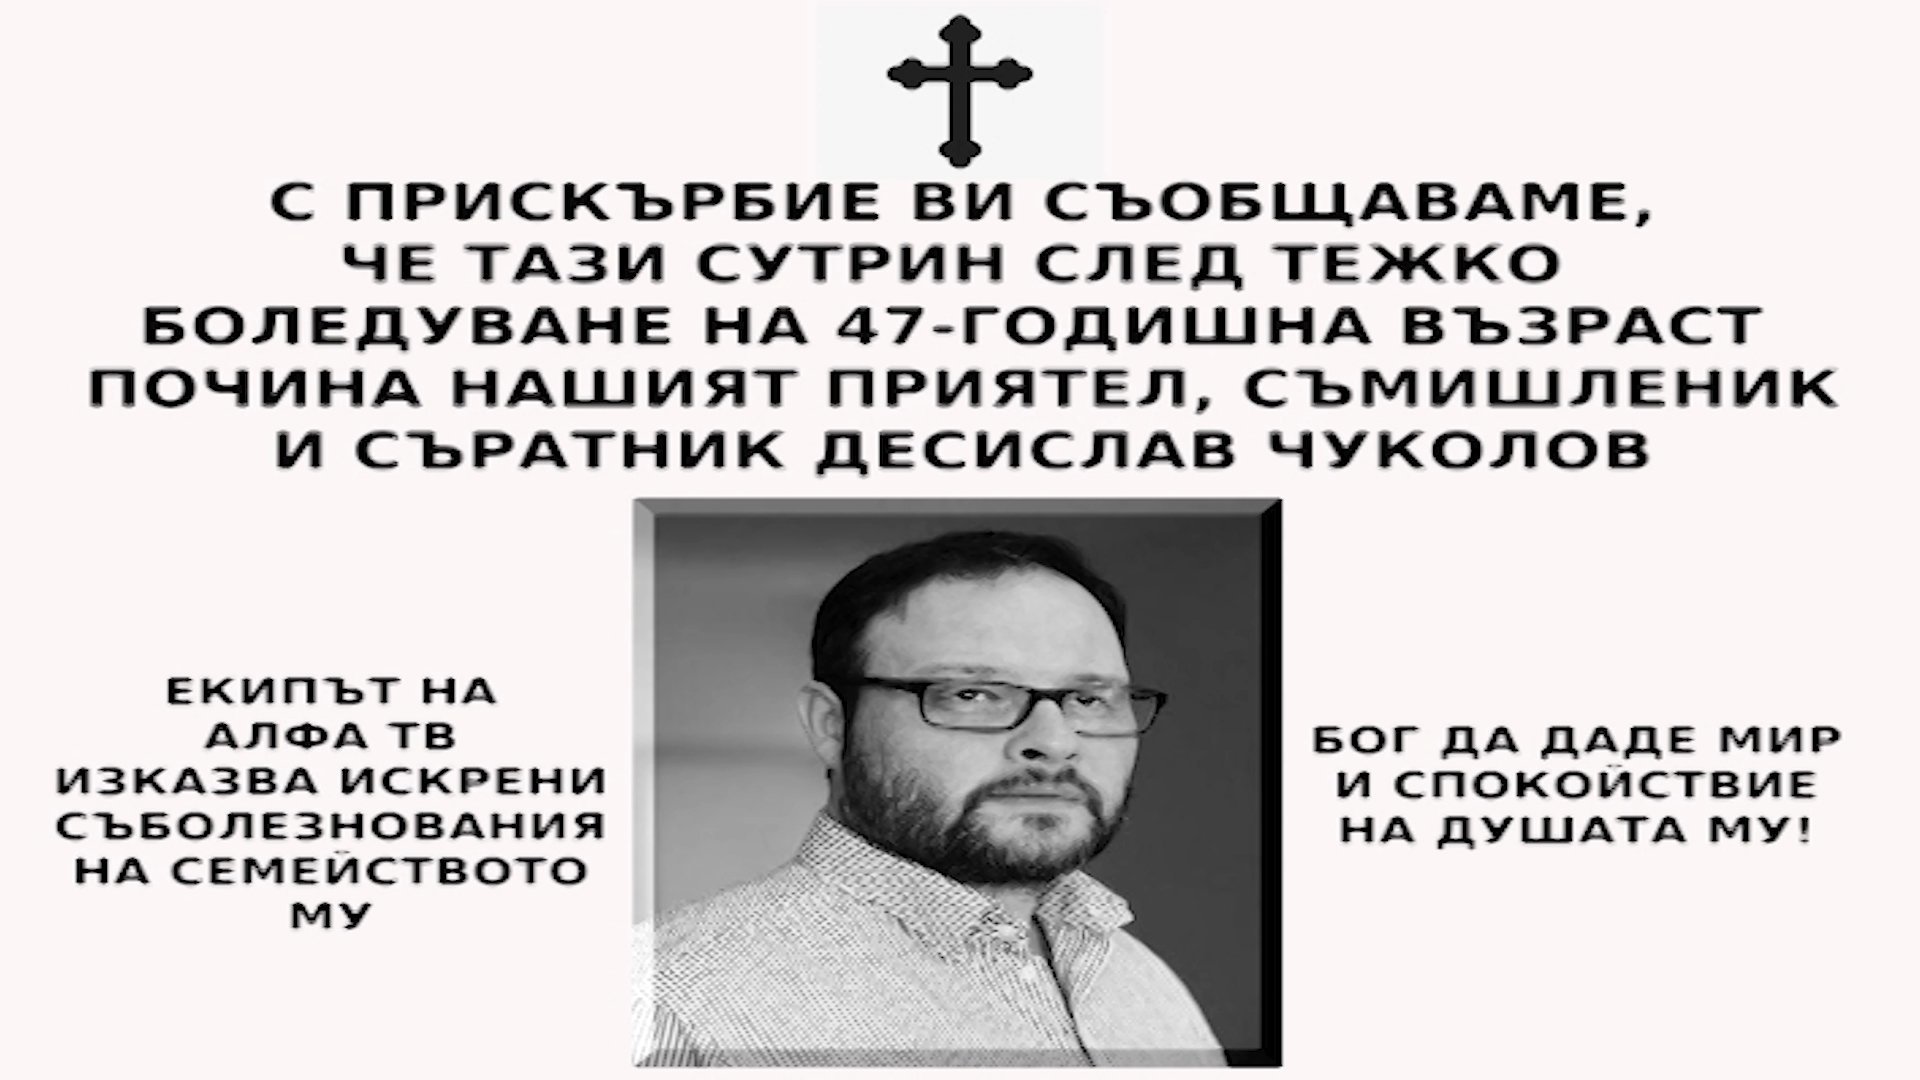 На 47 годишна възраст почина бившият депутат от Атака Десислав Чуколов